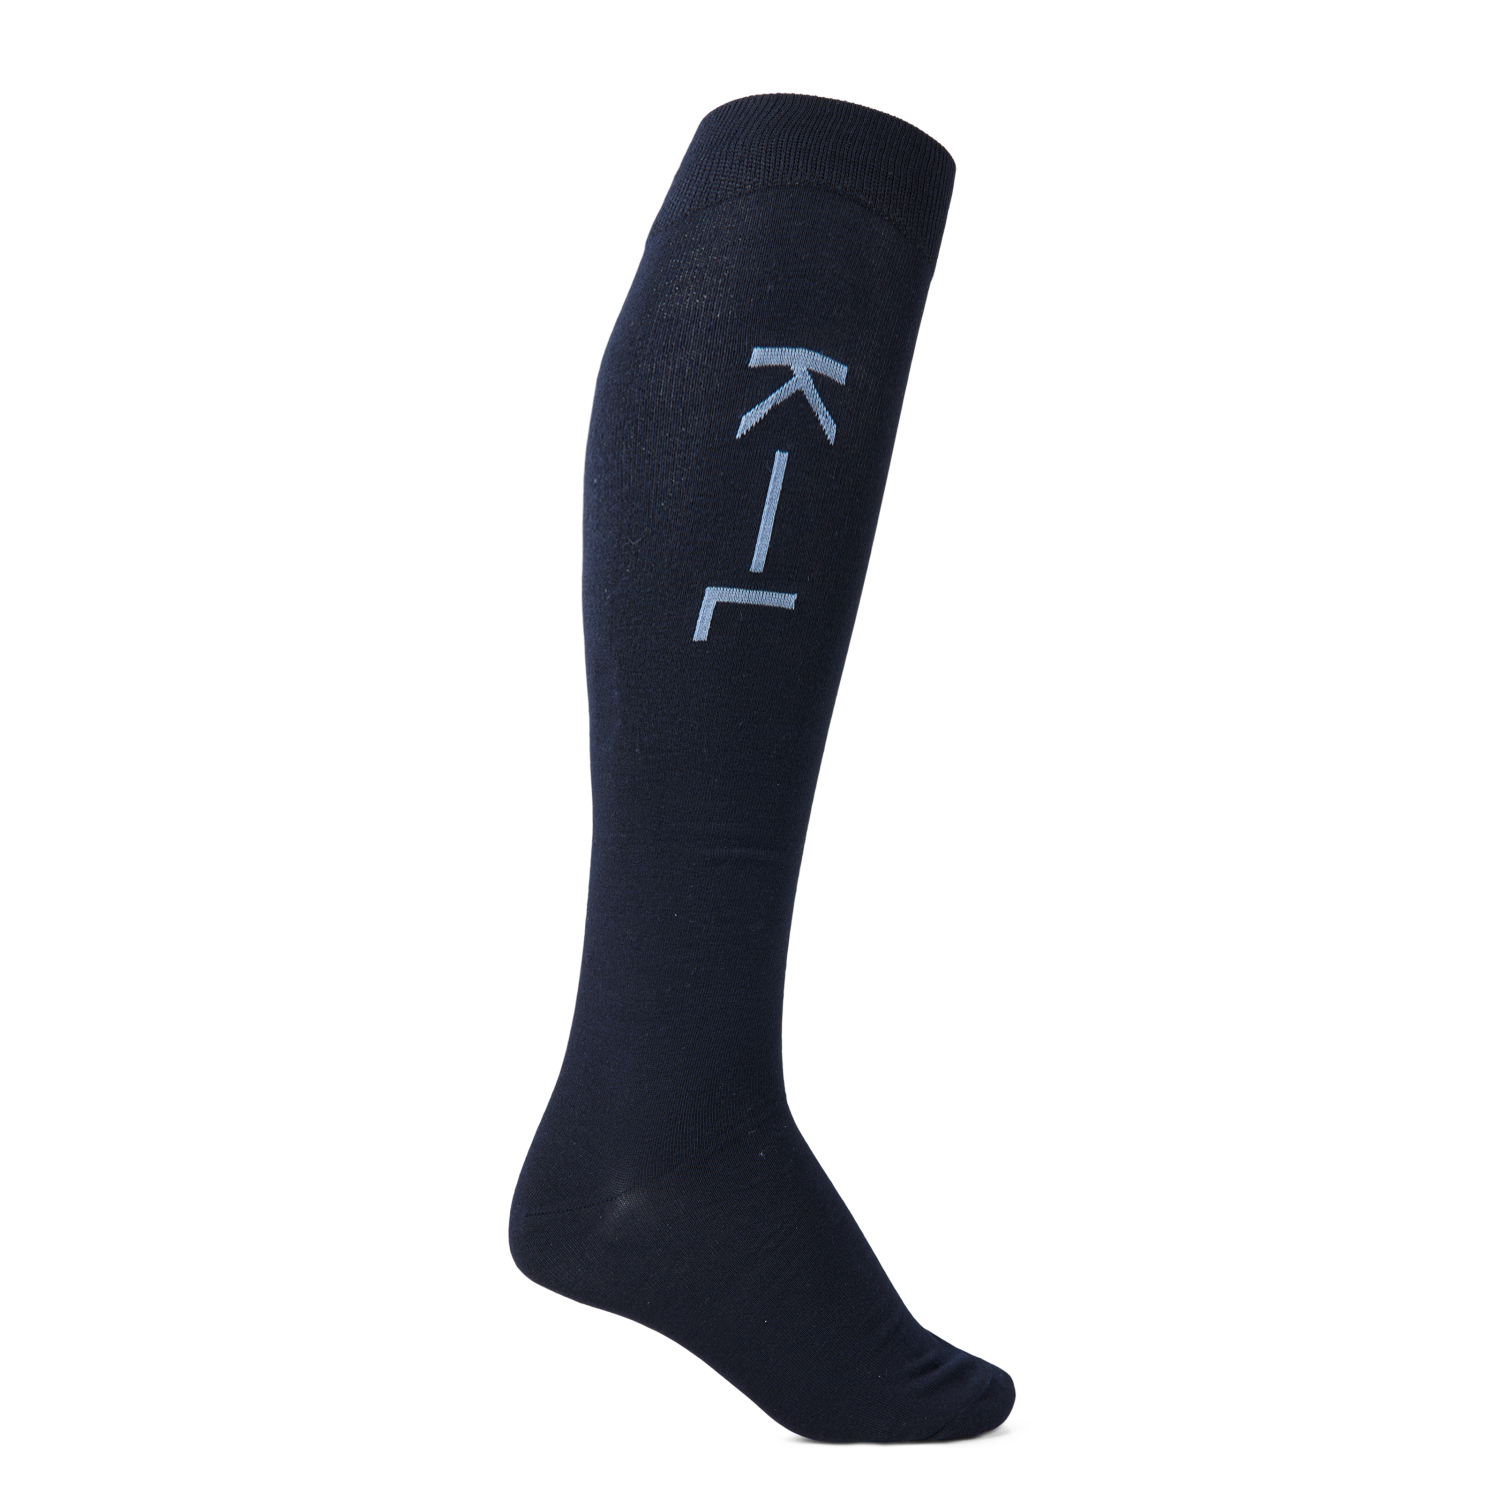 KLHarlow Unisex Coolmax Knee Socks 38-40